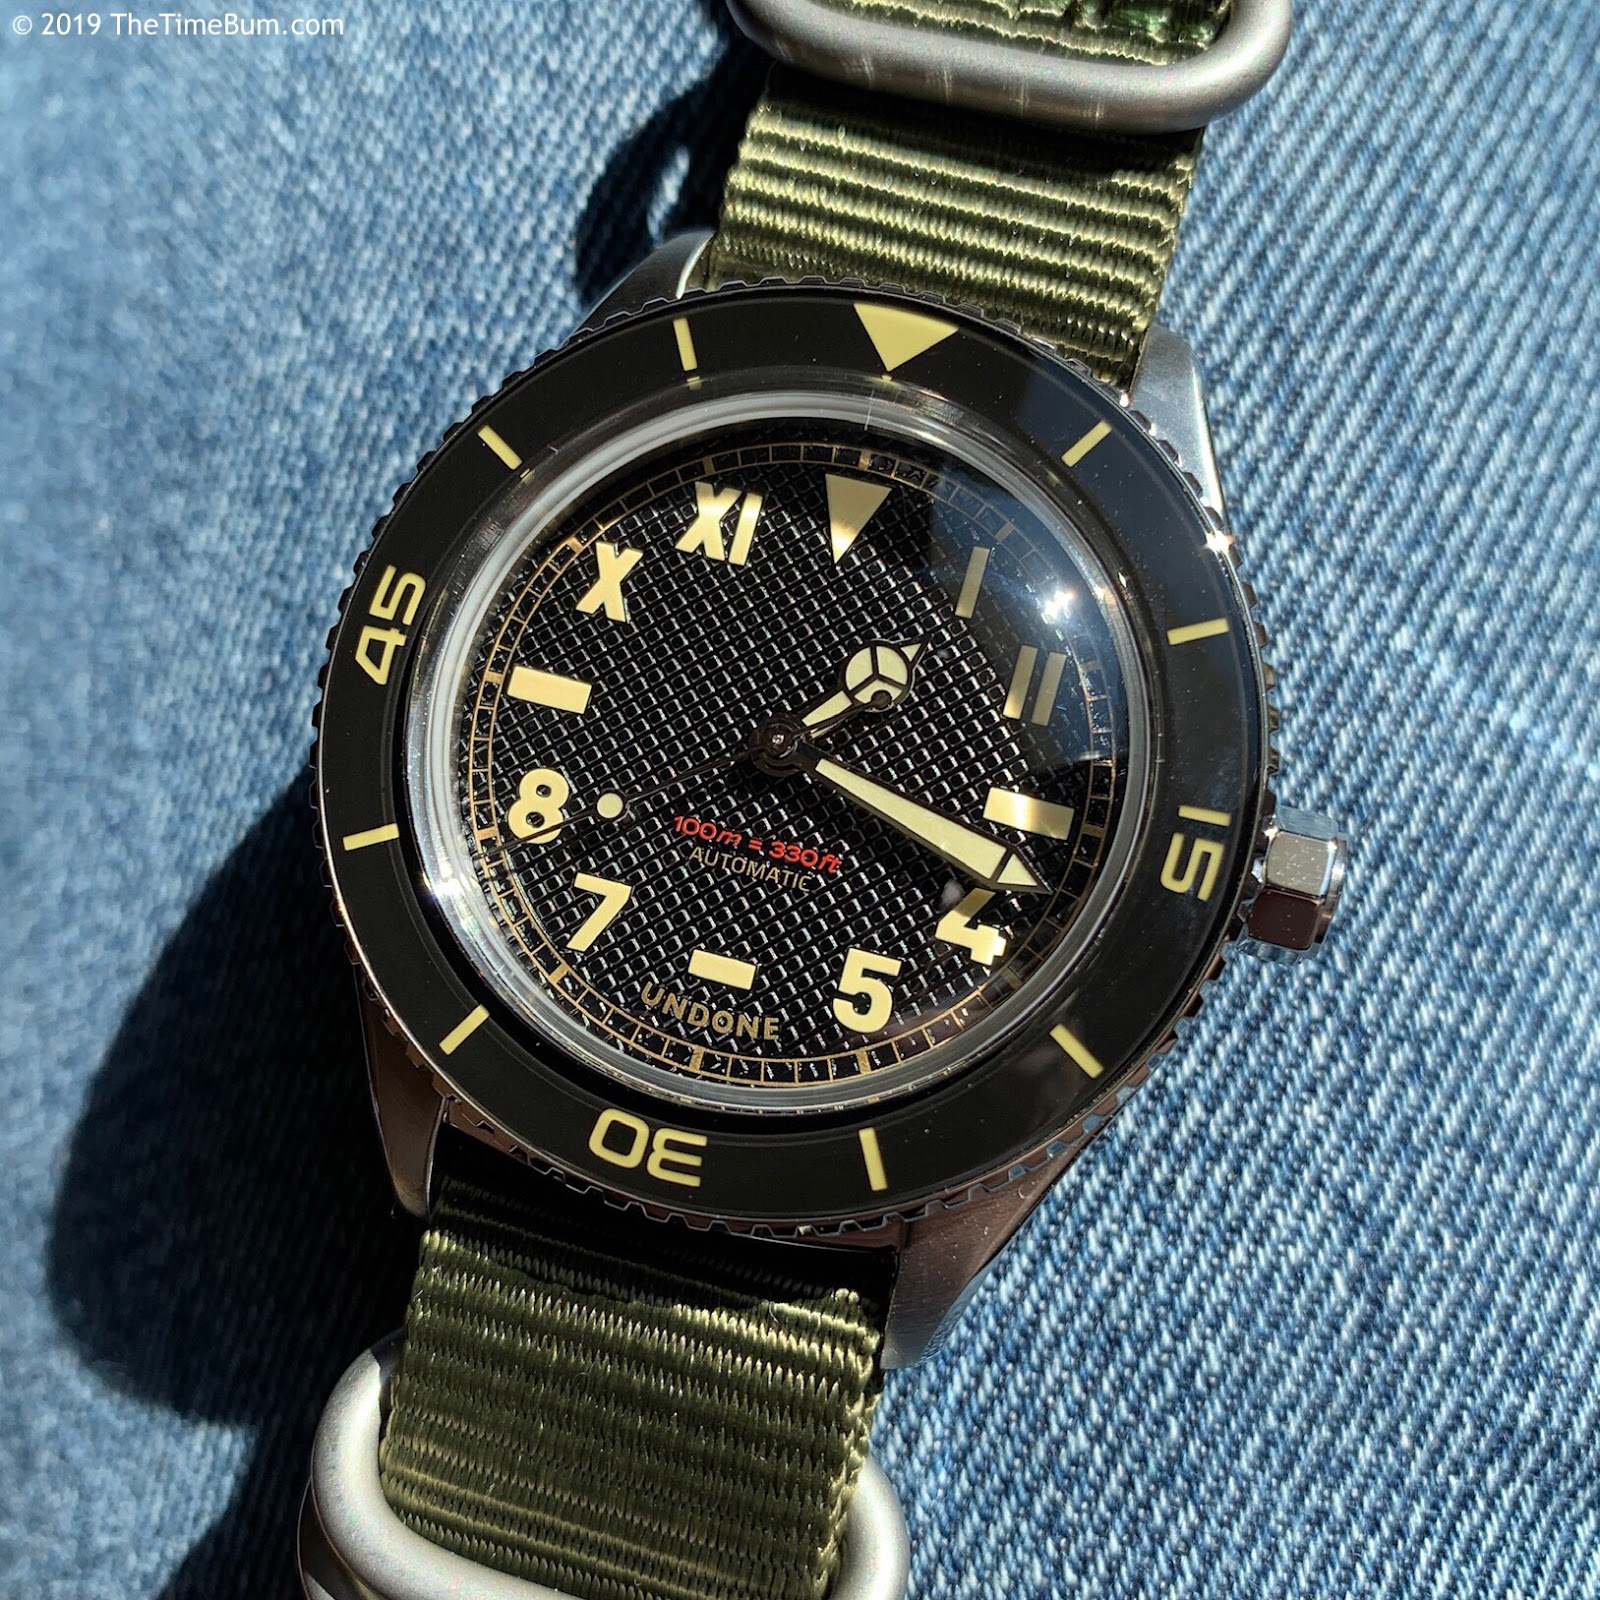 47％割引ブラック系本物保証! 未使用品 UNDONE BASECAMP CALI 腕時計(アナログ) 時計 ブラック系-WWW.FIDAKENYA.ORG